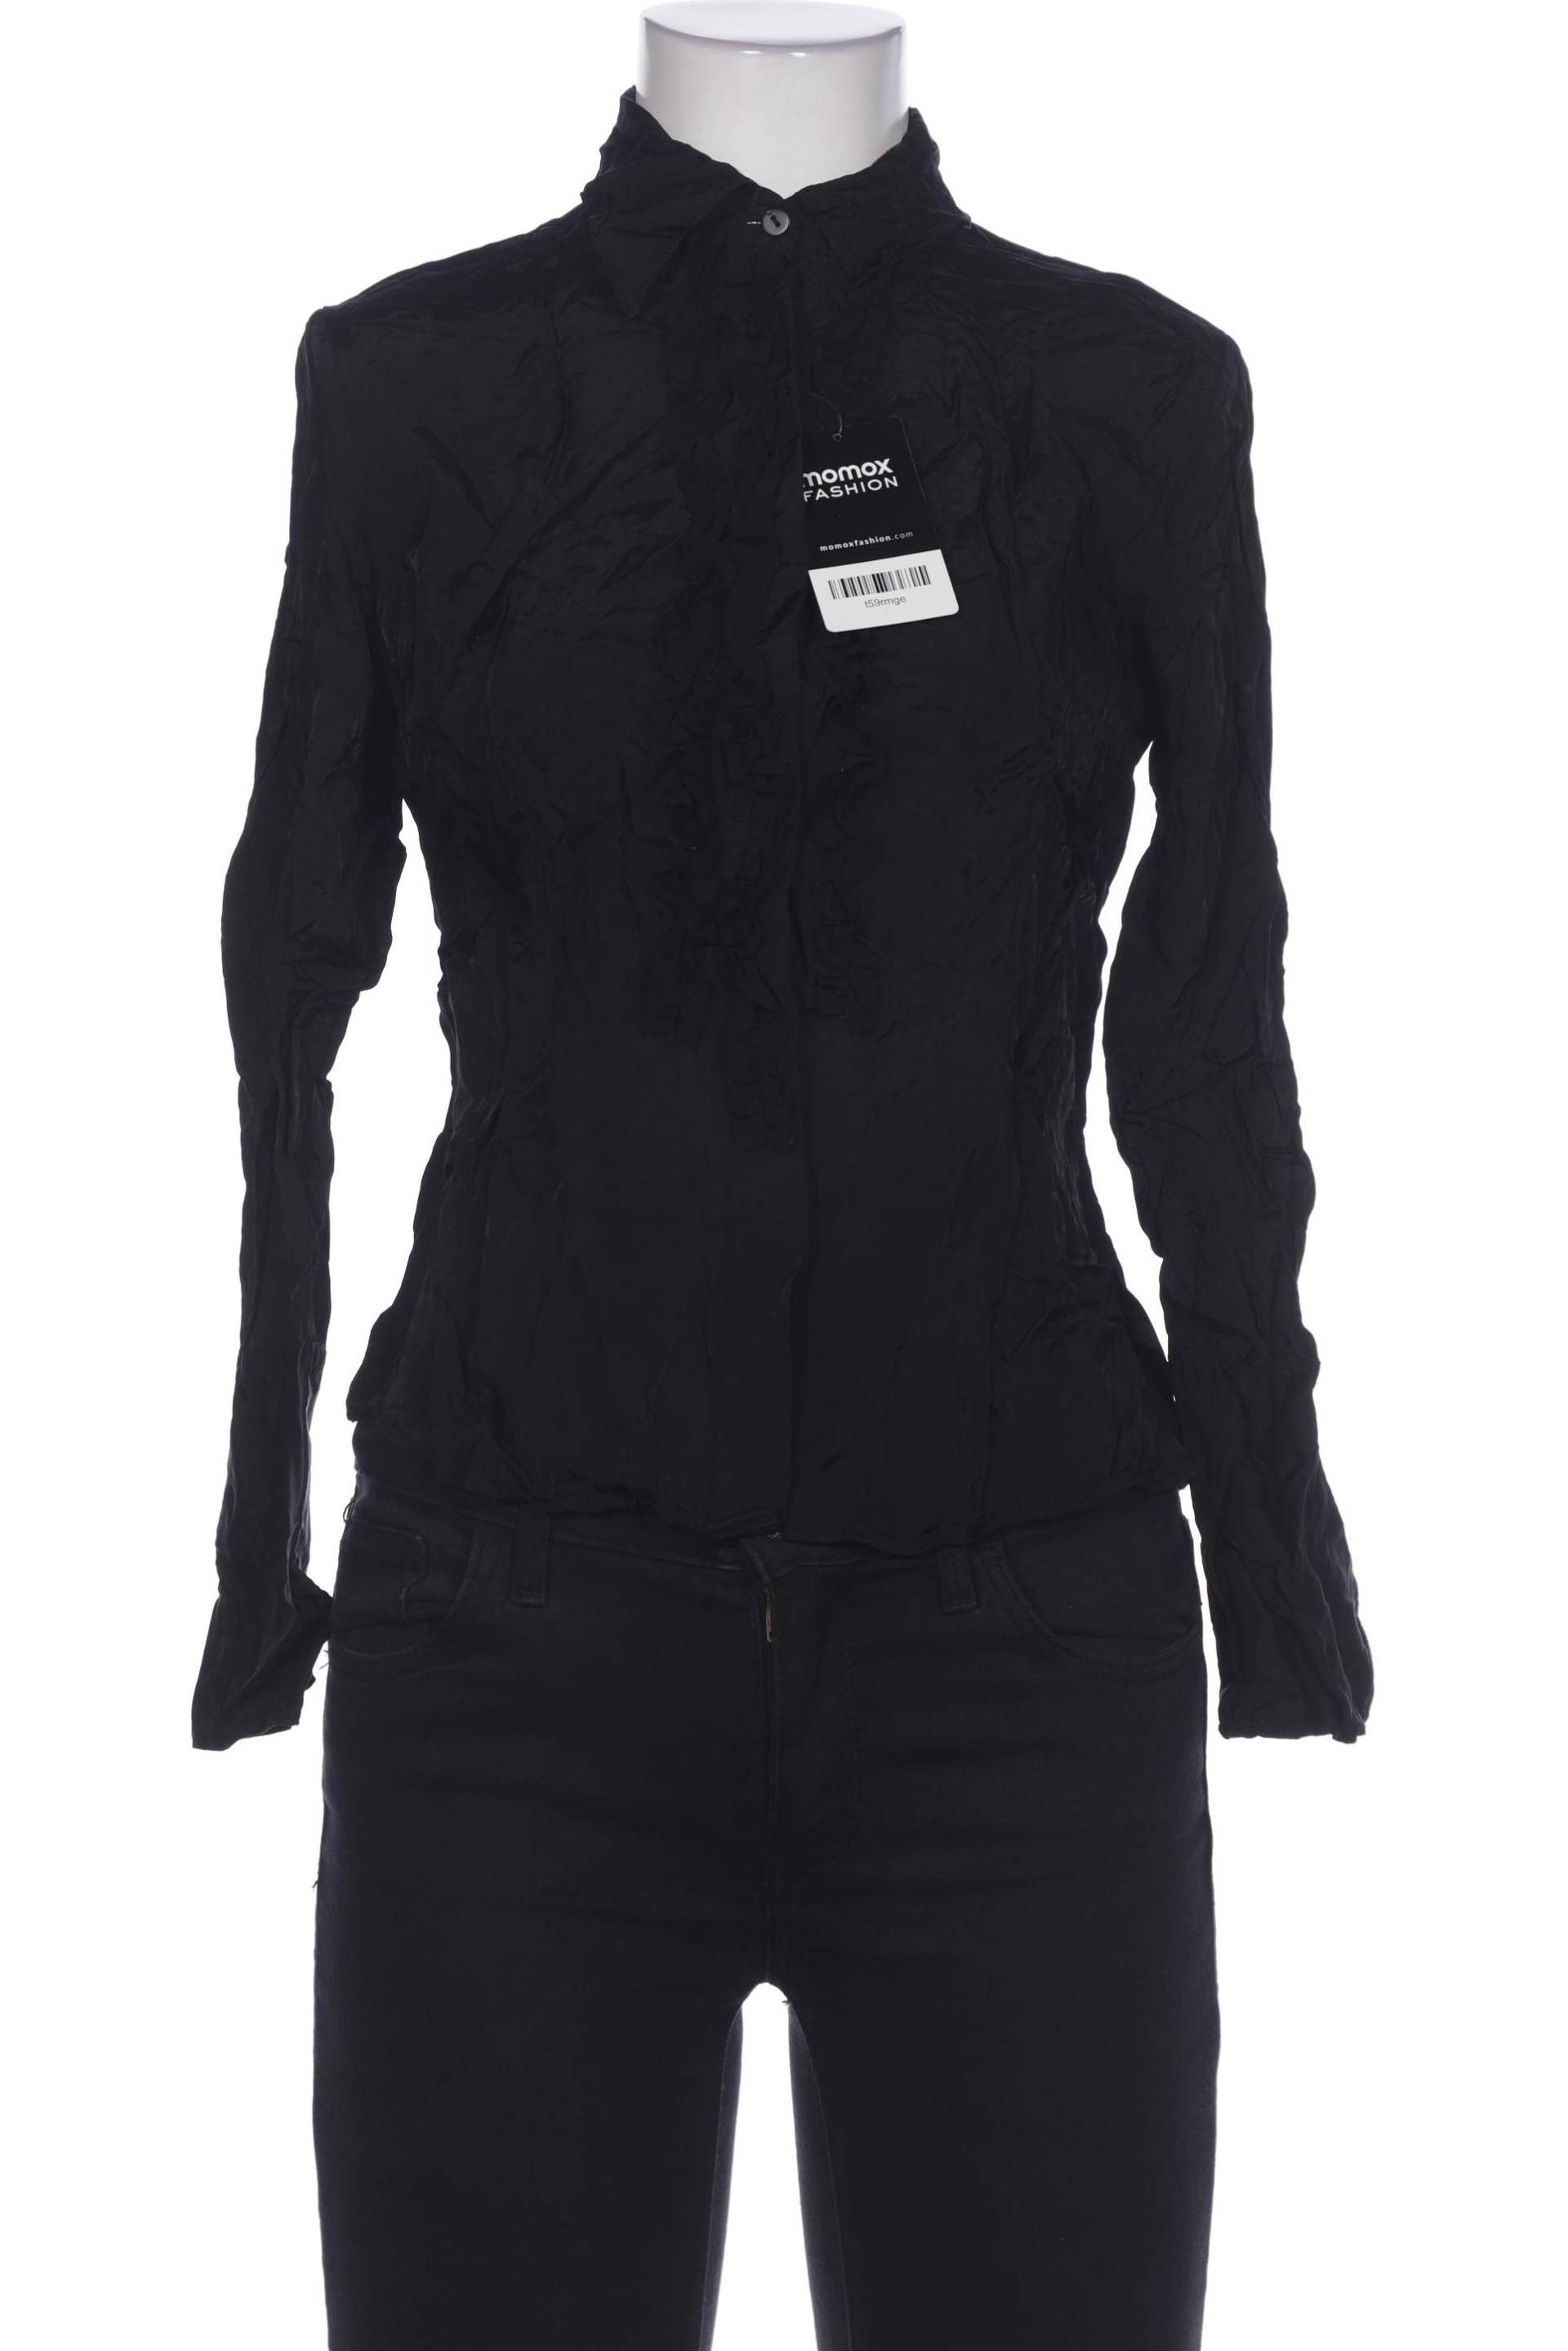 Stefanel Damen Bluse, schwarz, Gr. 36 von Stefanel